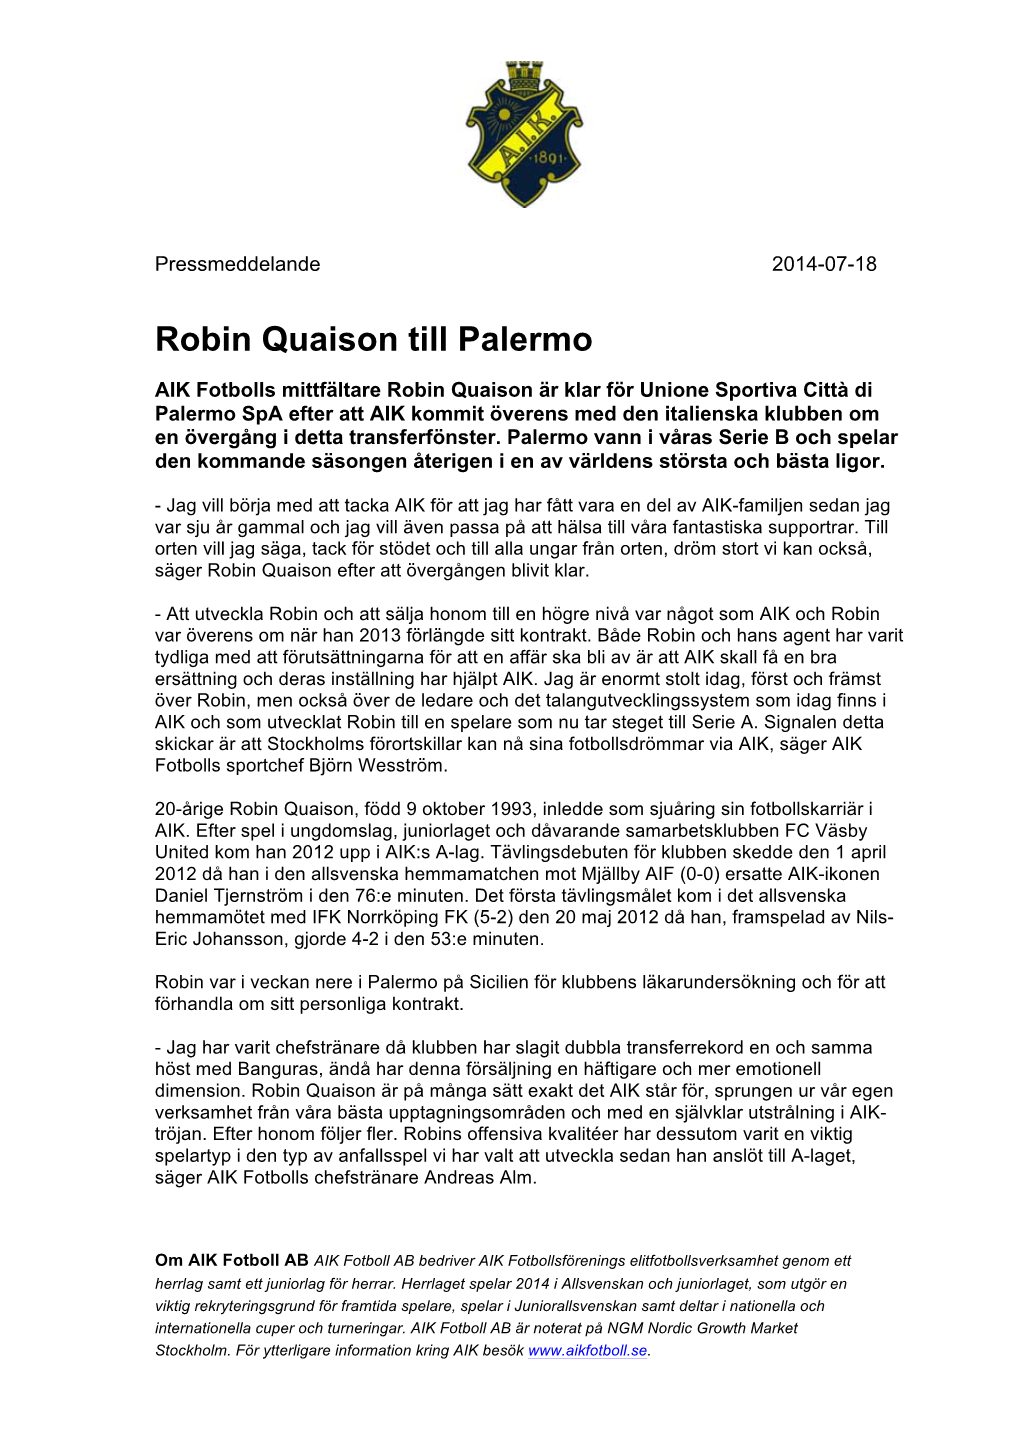 Robin Quaison Till Palermo